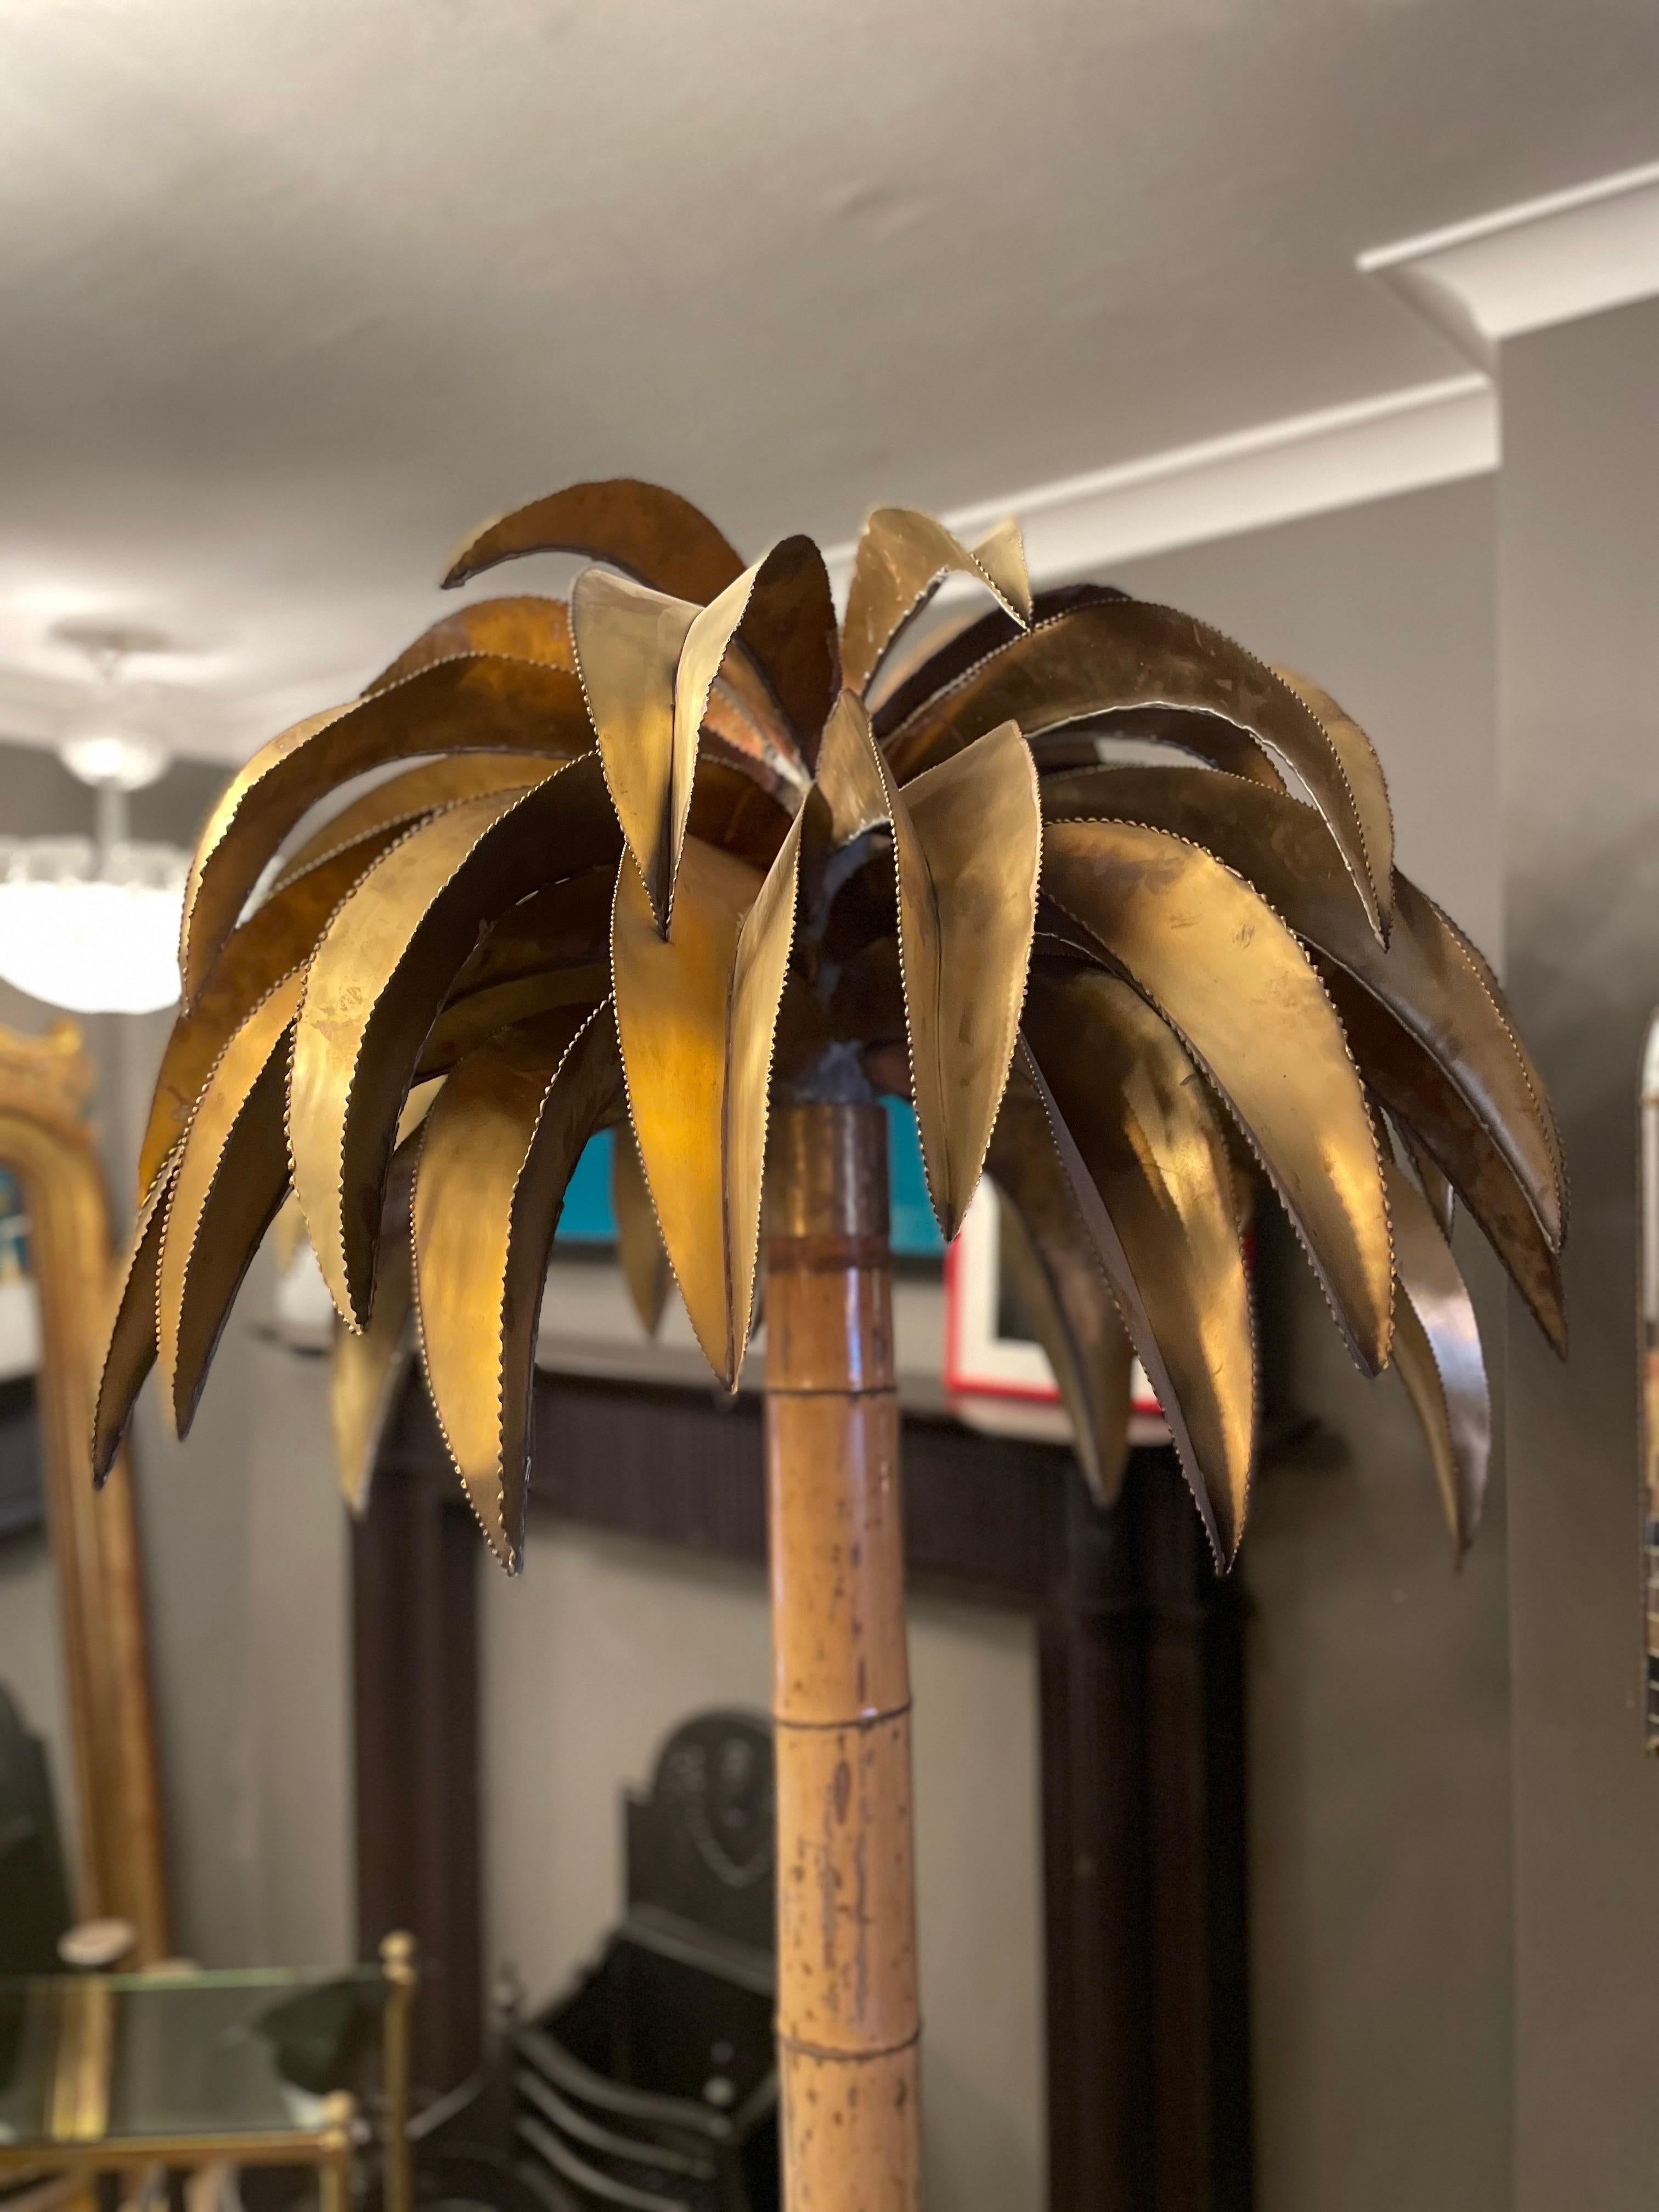 Ein sehr hohes und seltenes Modell der Jansen-Palme. Der Bambusstamm im Gegensatz zum Messing. Ein großer und breiter Palmenbaldachin aus Messing mit einem Bambusstamm, der von einem schwarz lackierten Sockel aus Messing gestützt wird, unter dem